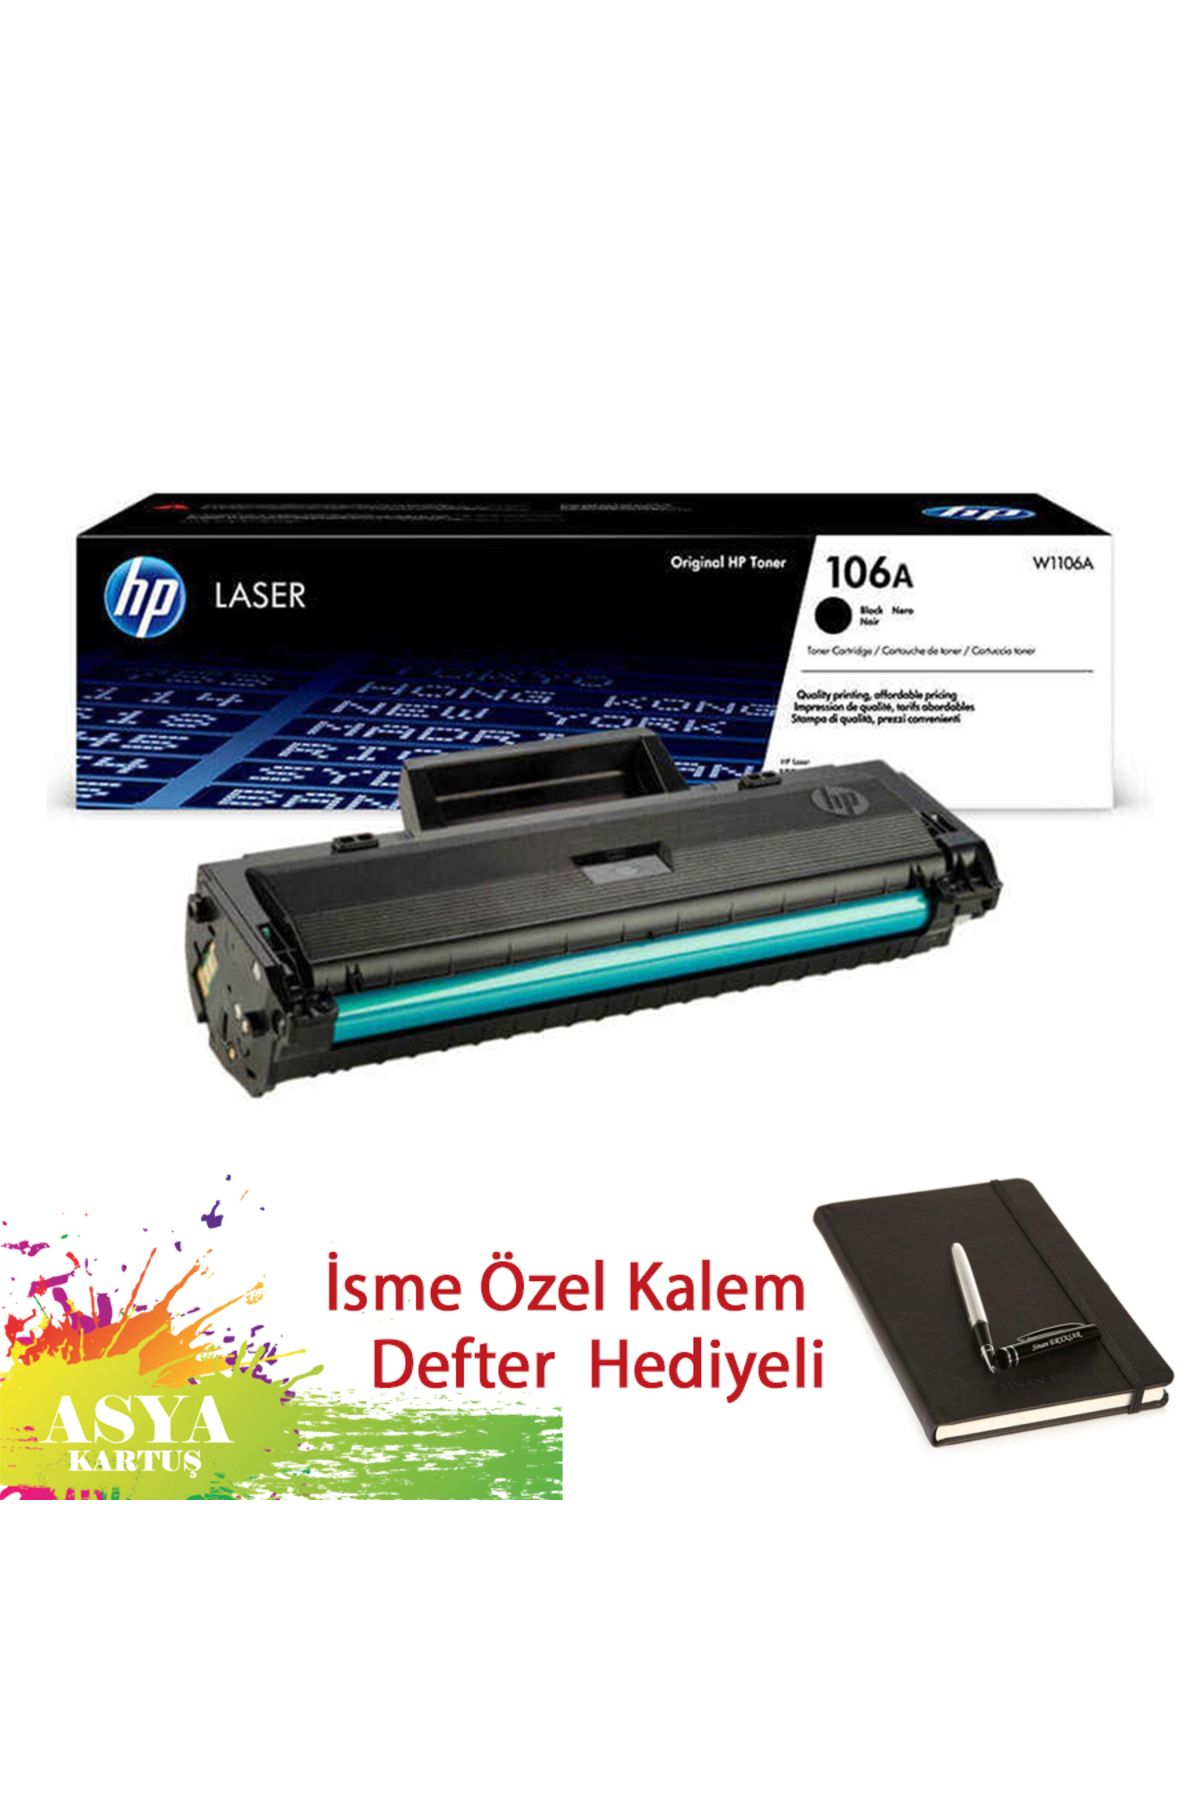 HP Laserjet MFP135 Uyumlu, Hp W1106A (106A) 1000 Sayfa Baskı Kapasiteli Orijinal Toner